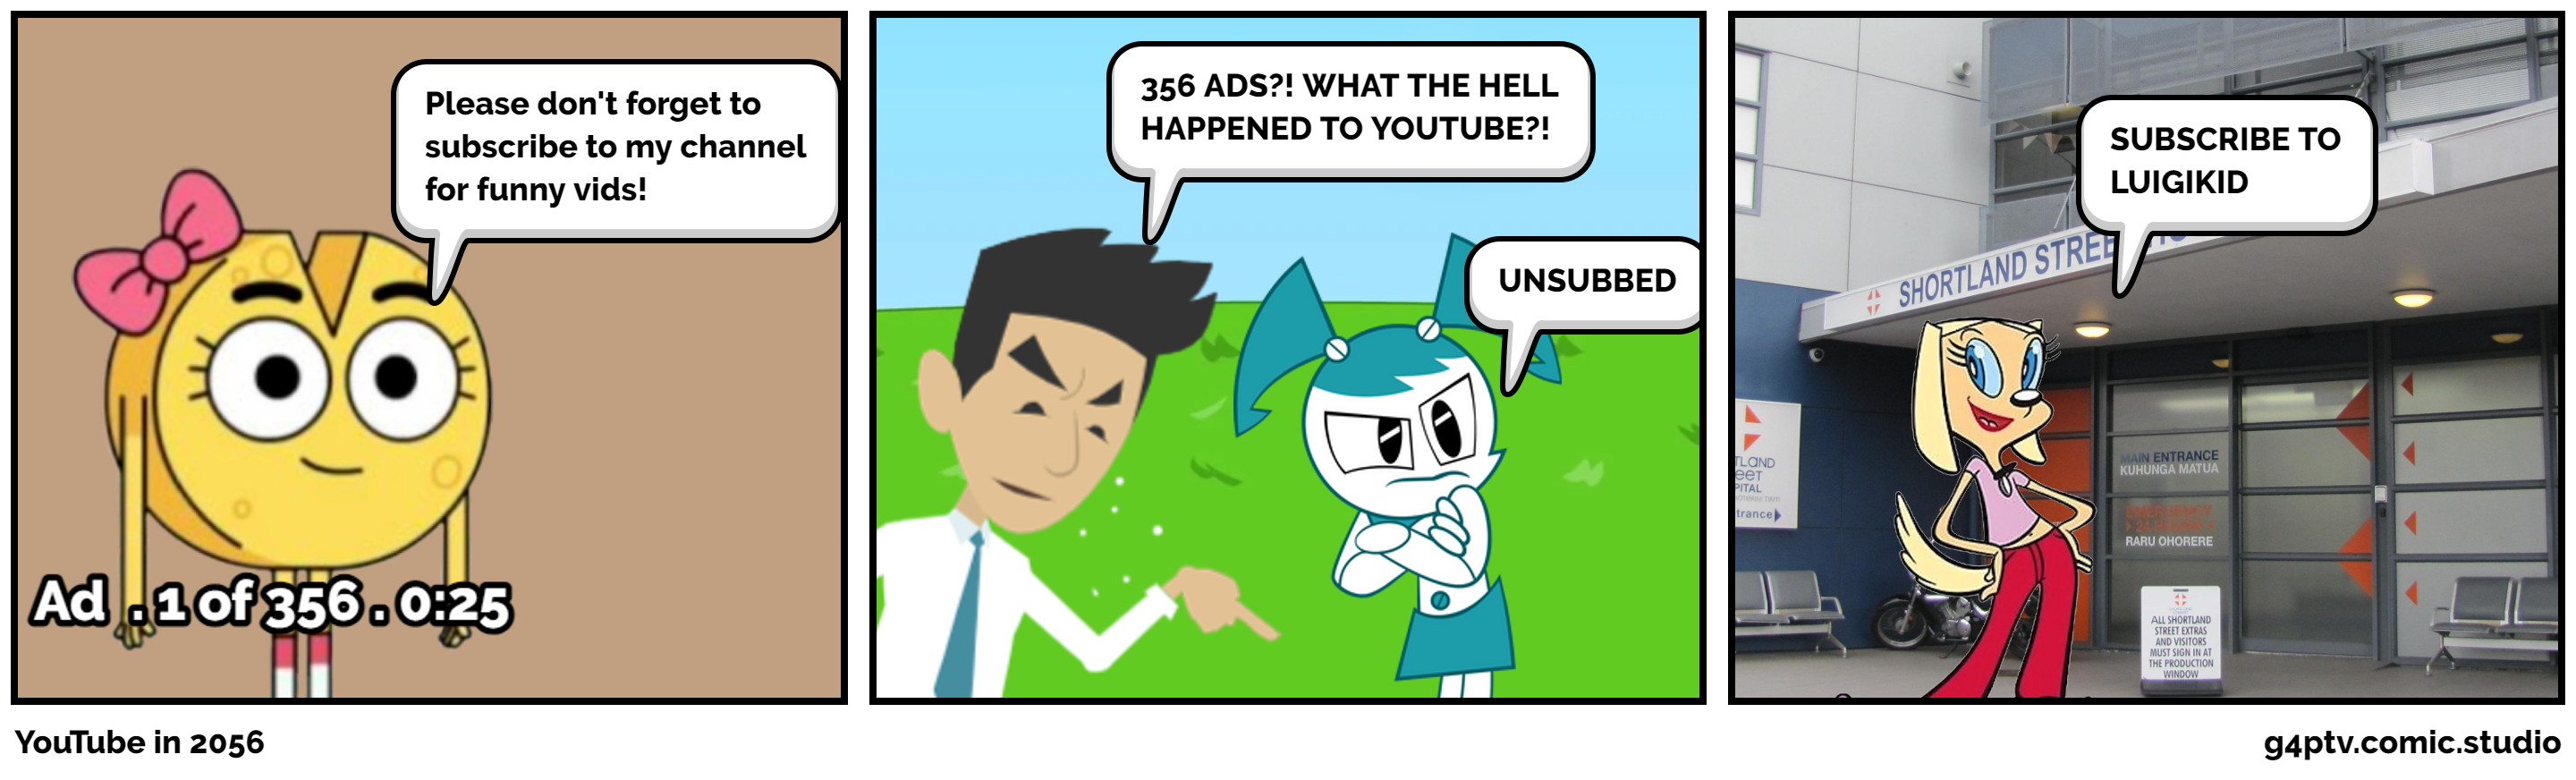 YouTube in 2056